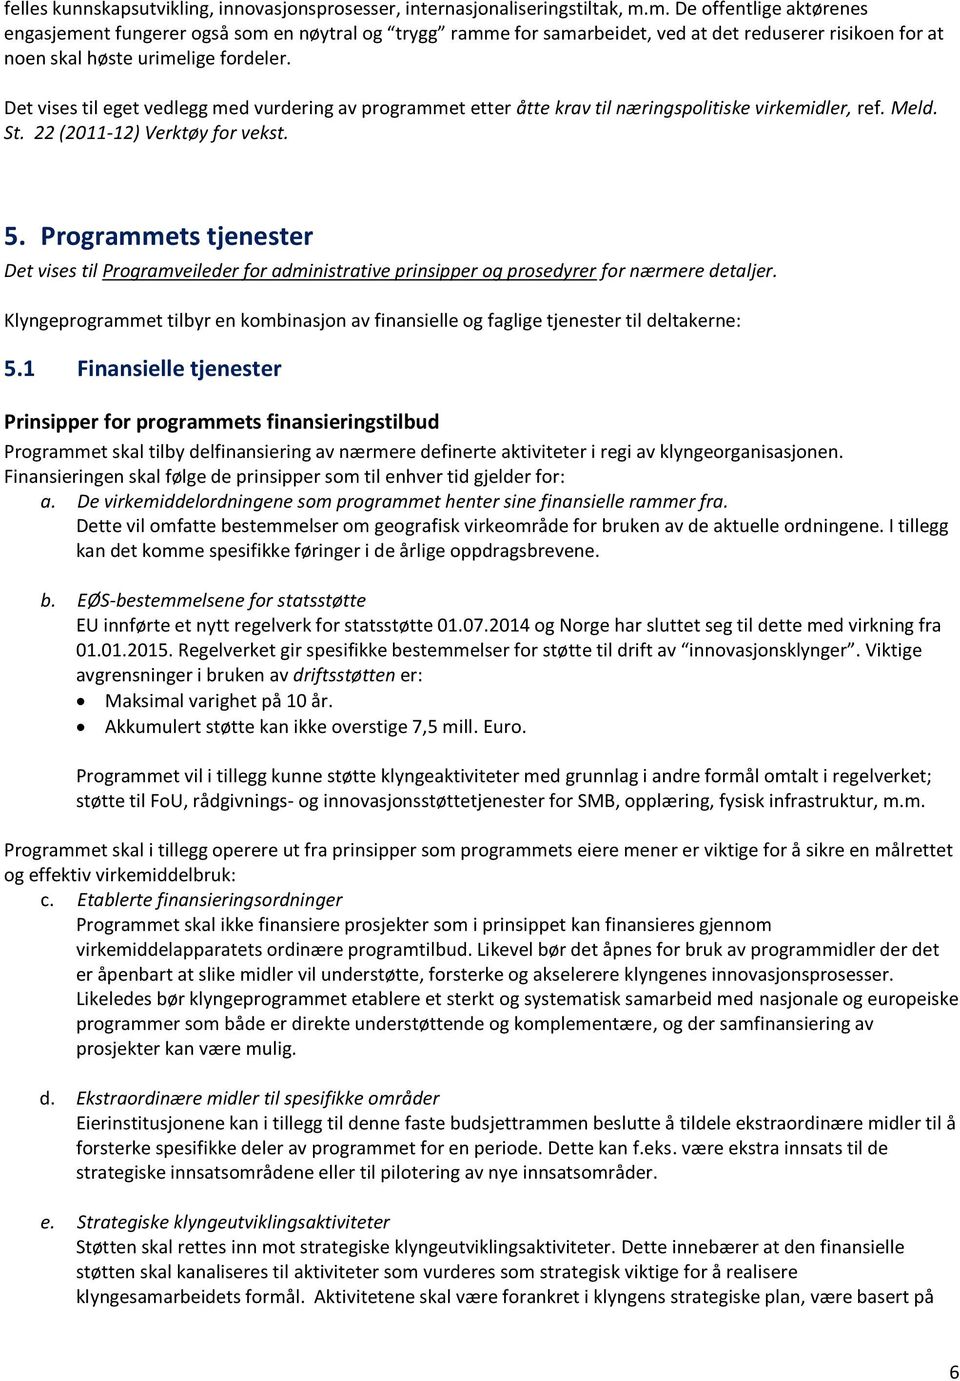 Det vises til eget vedlegg med vurdering av programmet etter åtte krav til næringspolitiske virkemidler, ref. Meld. St. 22 (2011-12) Verktøy for vekst. 5.